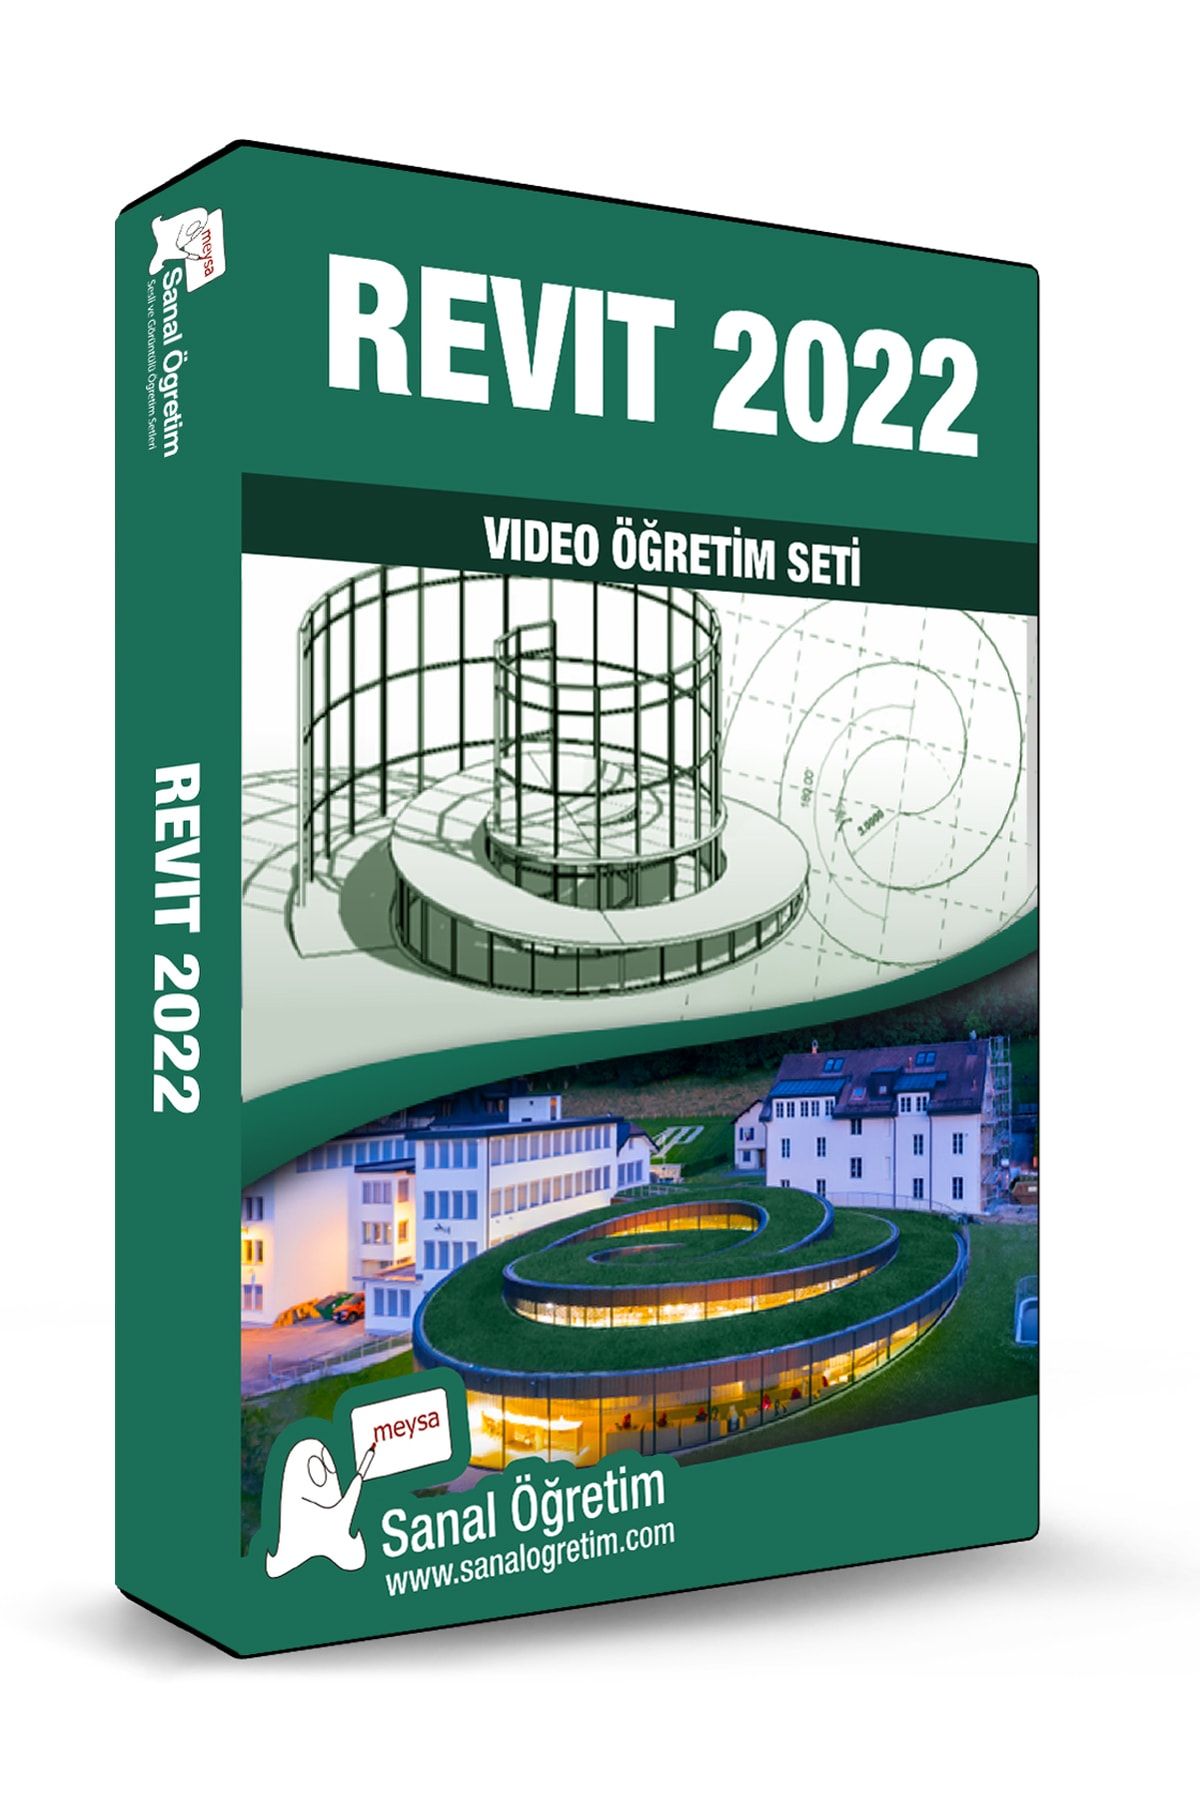 Sanal Öğretim Revit 2022 Video Ders Eğitim Seti